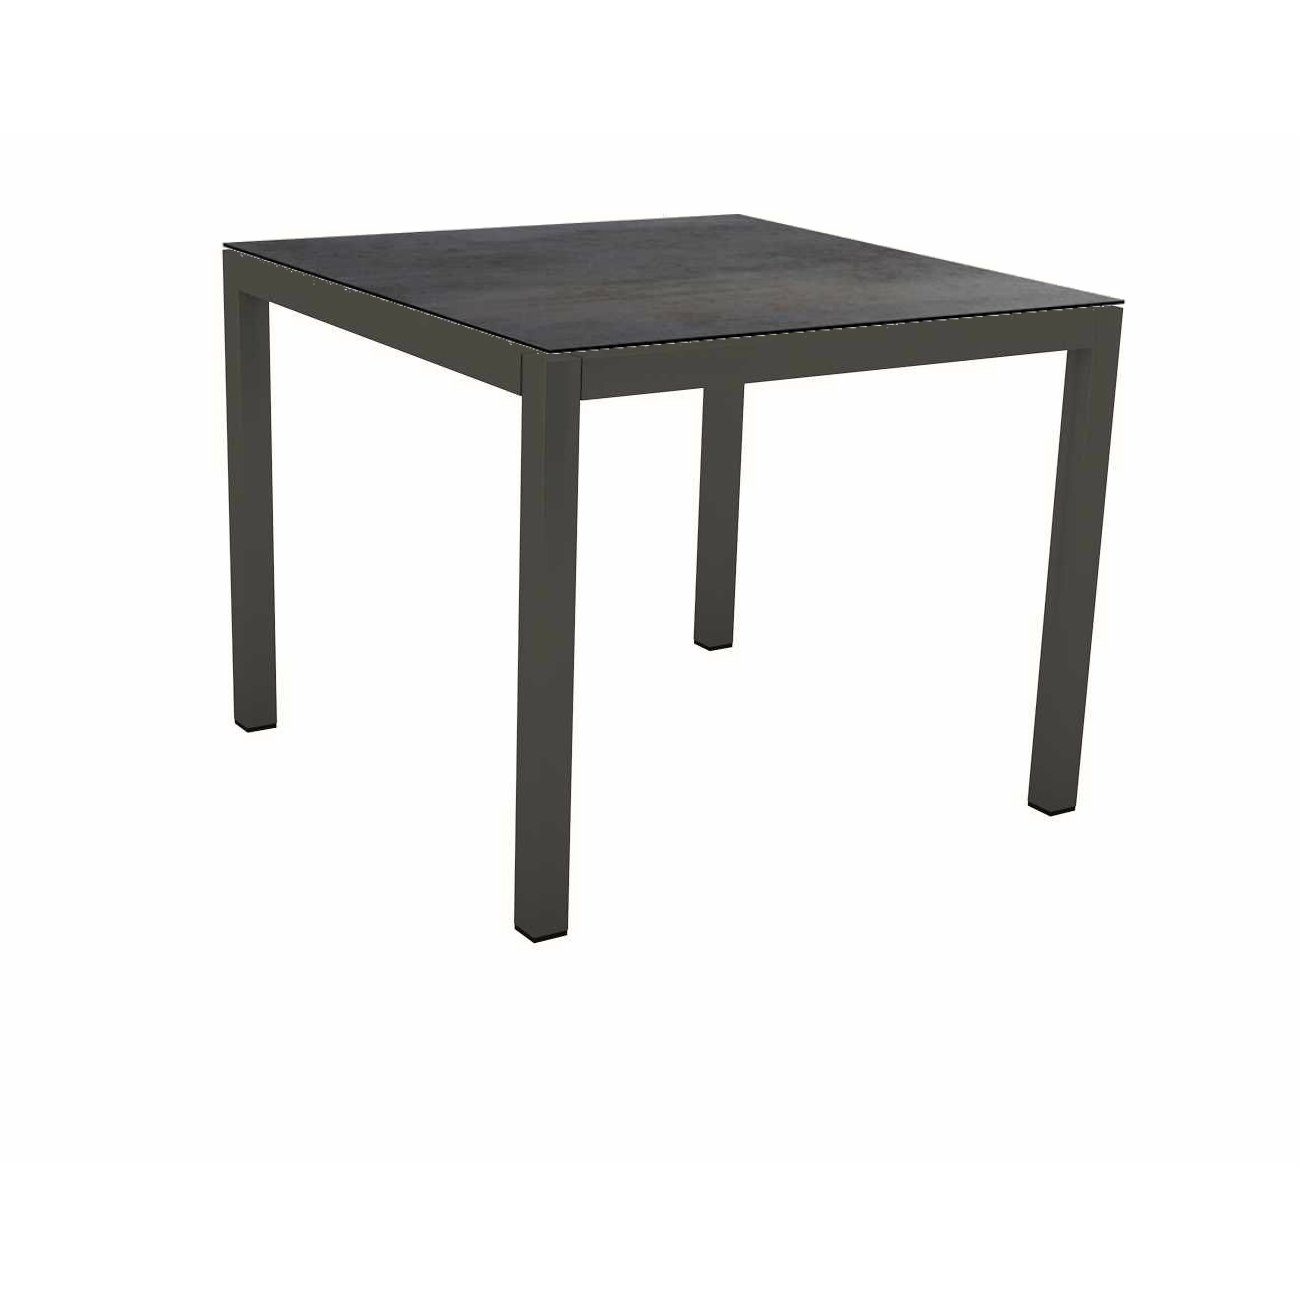 Stern Tischsystem Gartentisch, Gestell Aluminium anthrazit, Tischplatte HPL Nitro, Maße: 90x90 cm